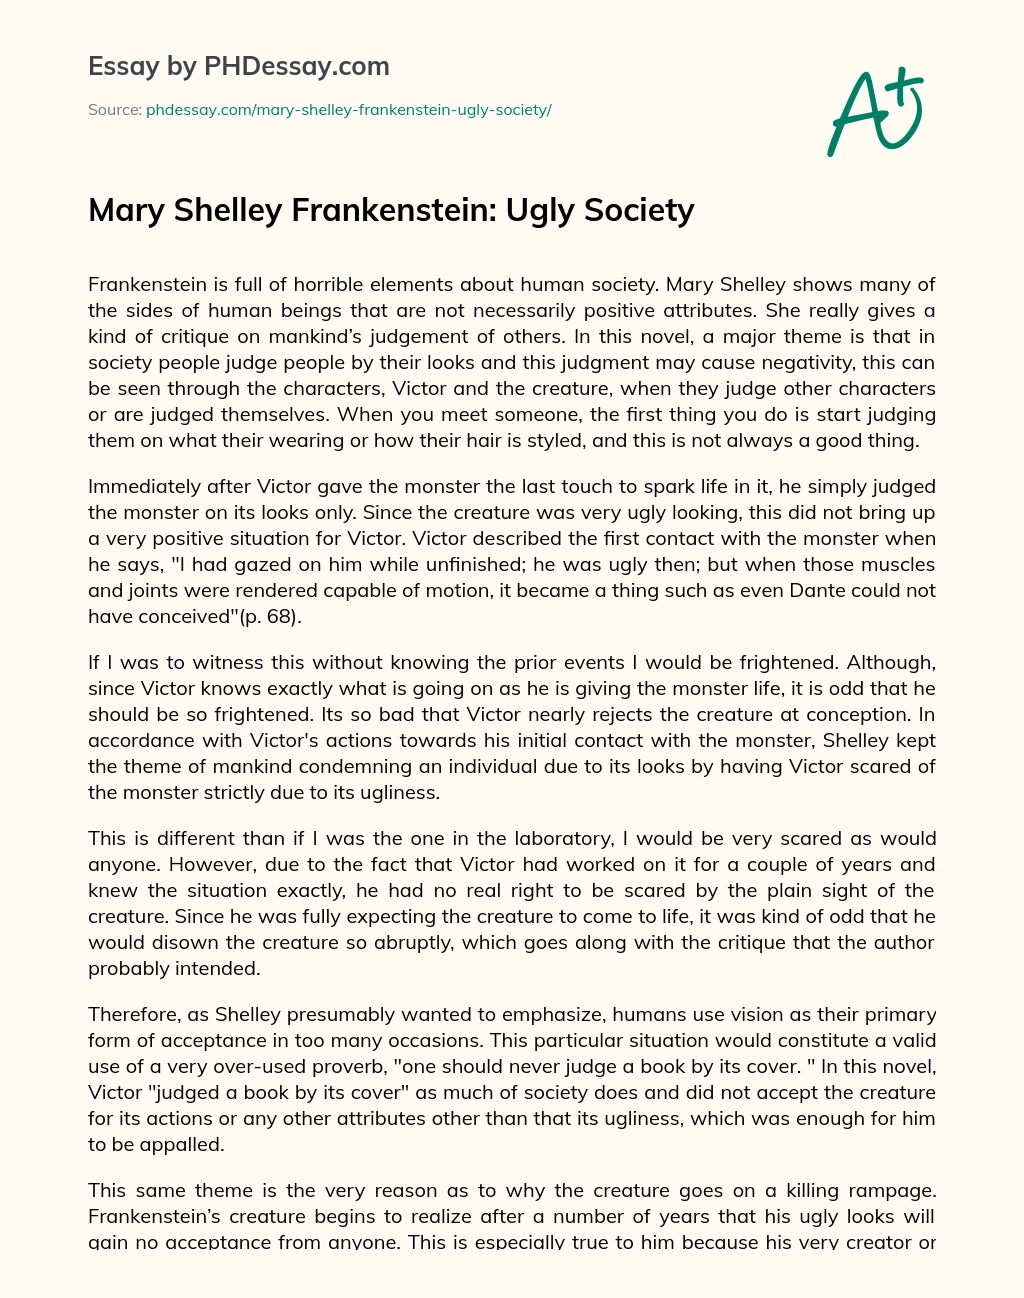 Mary Shelley Frankenstein: Ugly Society essay